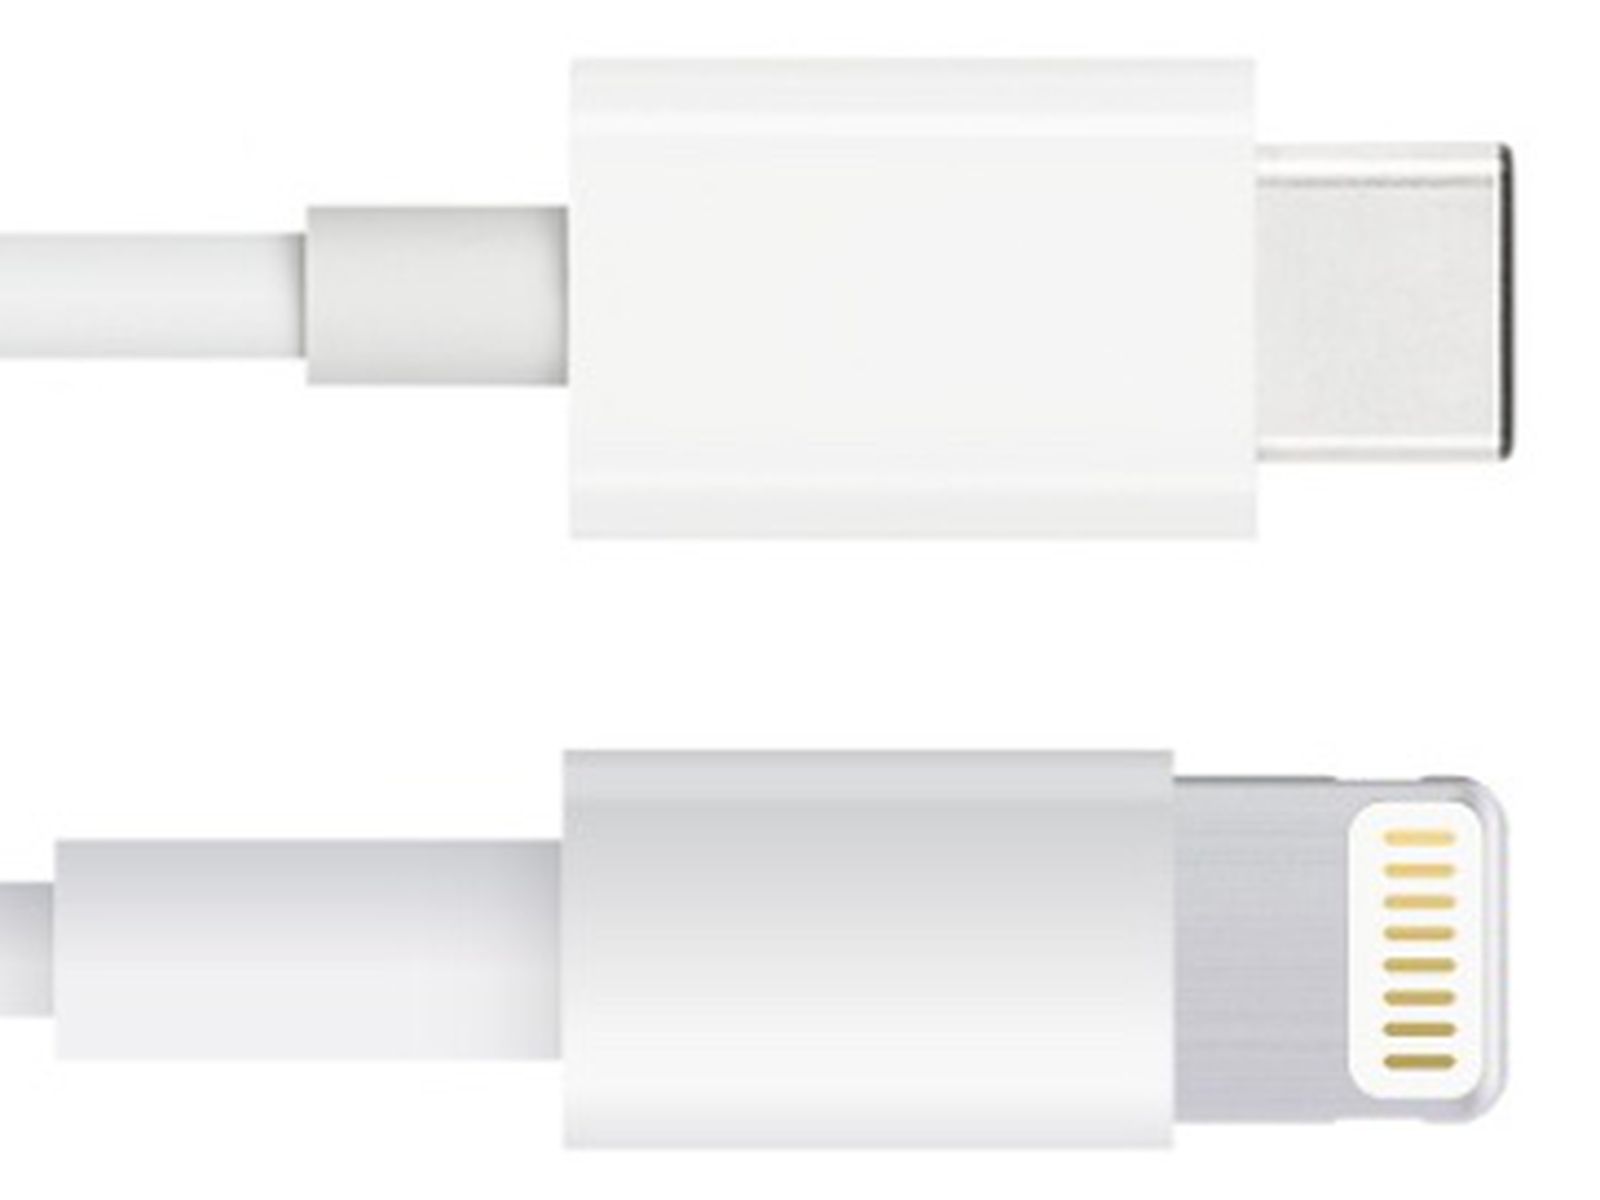 Adaptador USB C para IPHONE  Lightning para USB C 